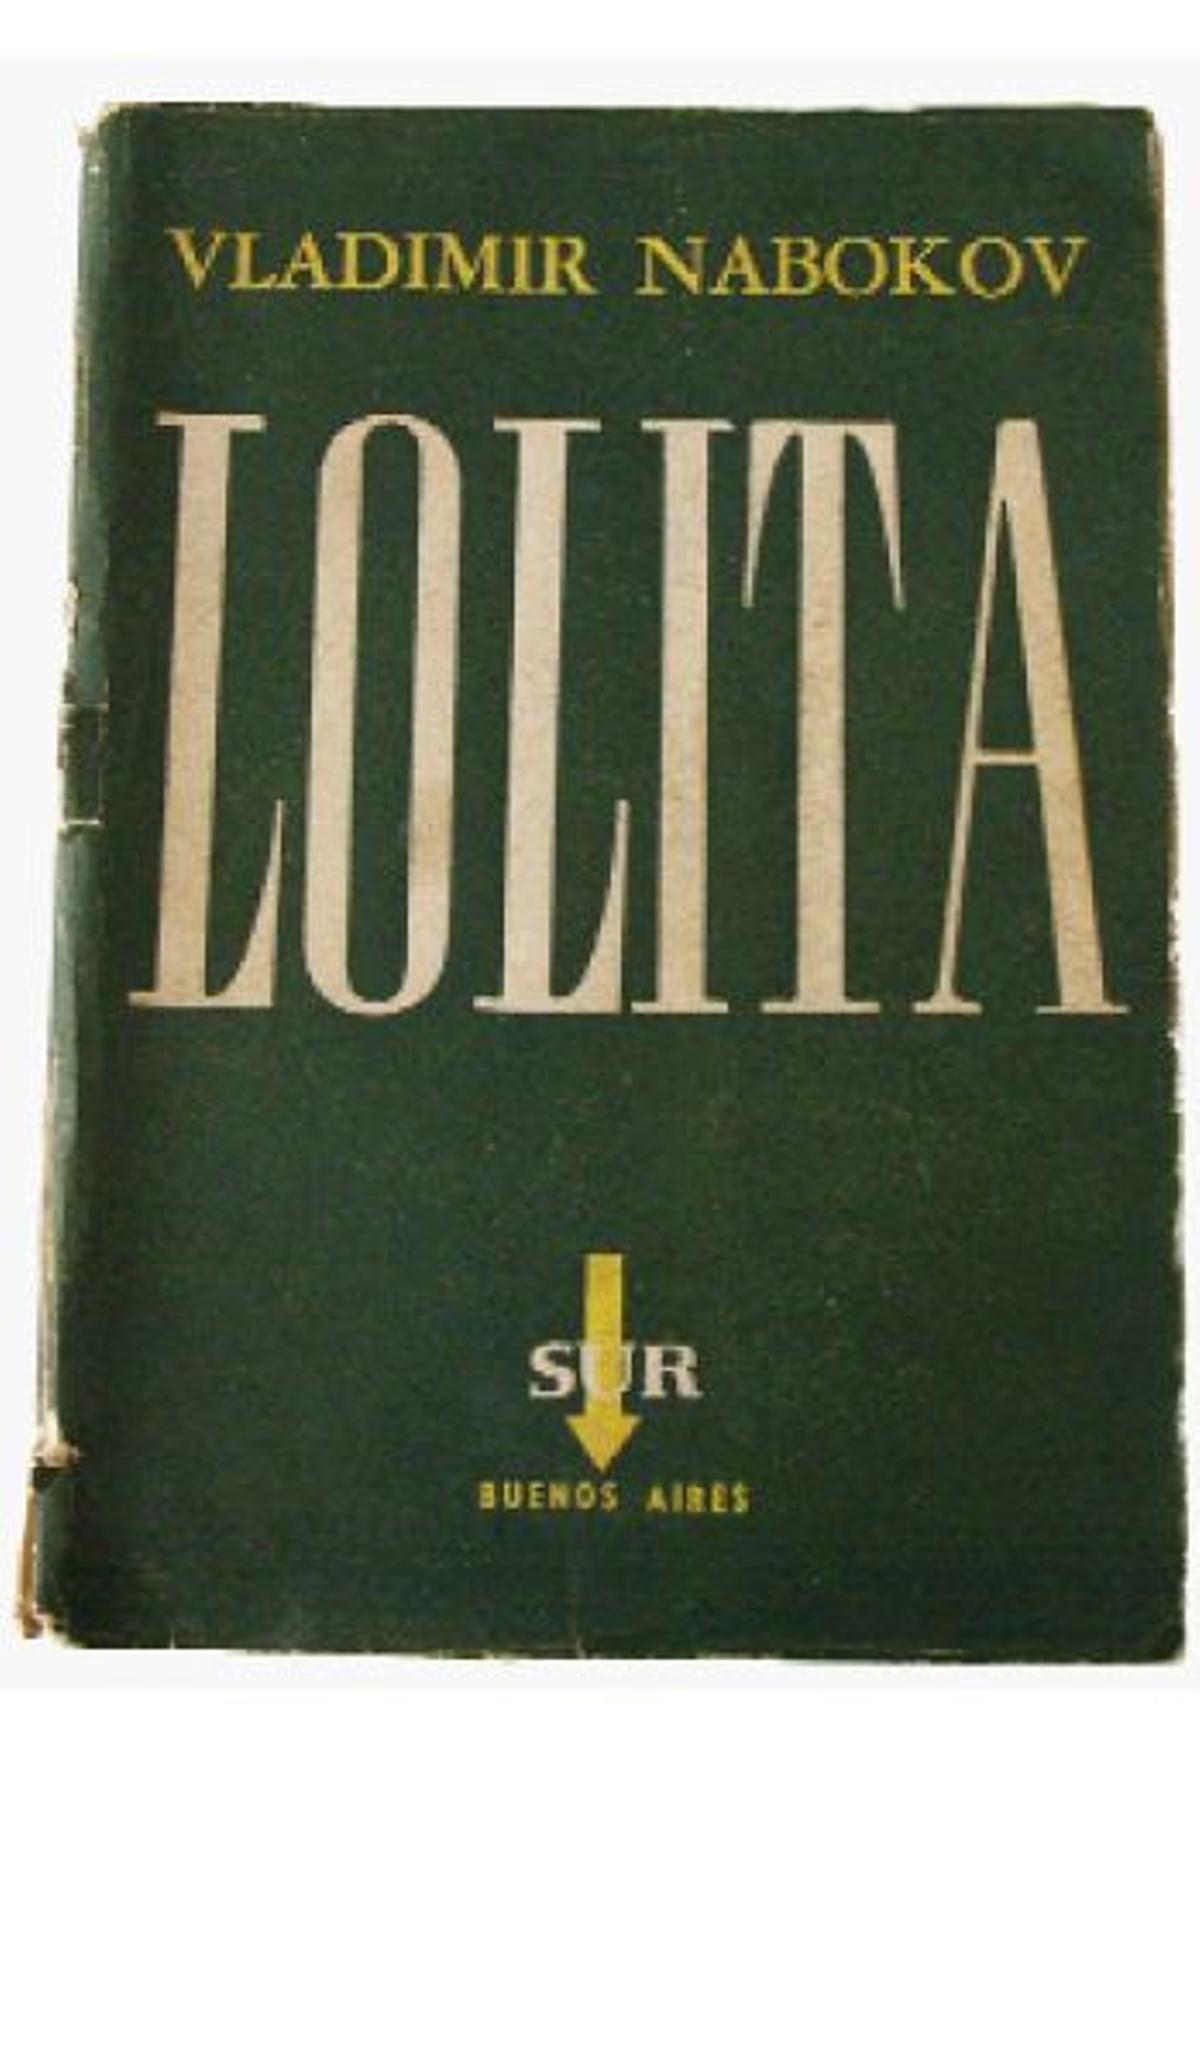 50 años con Lolita